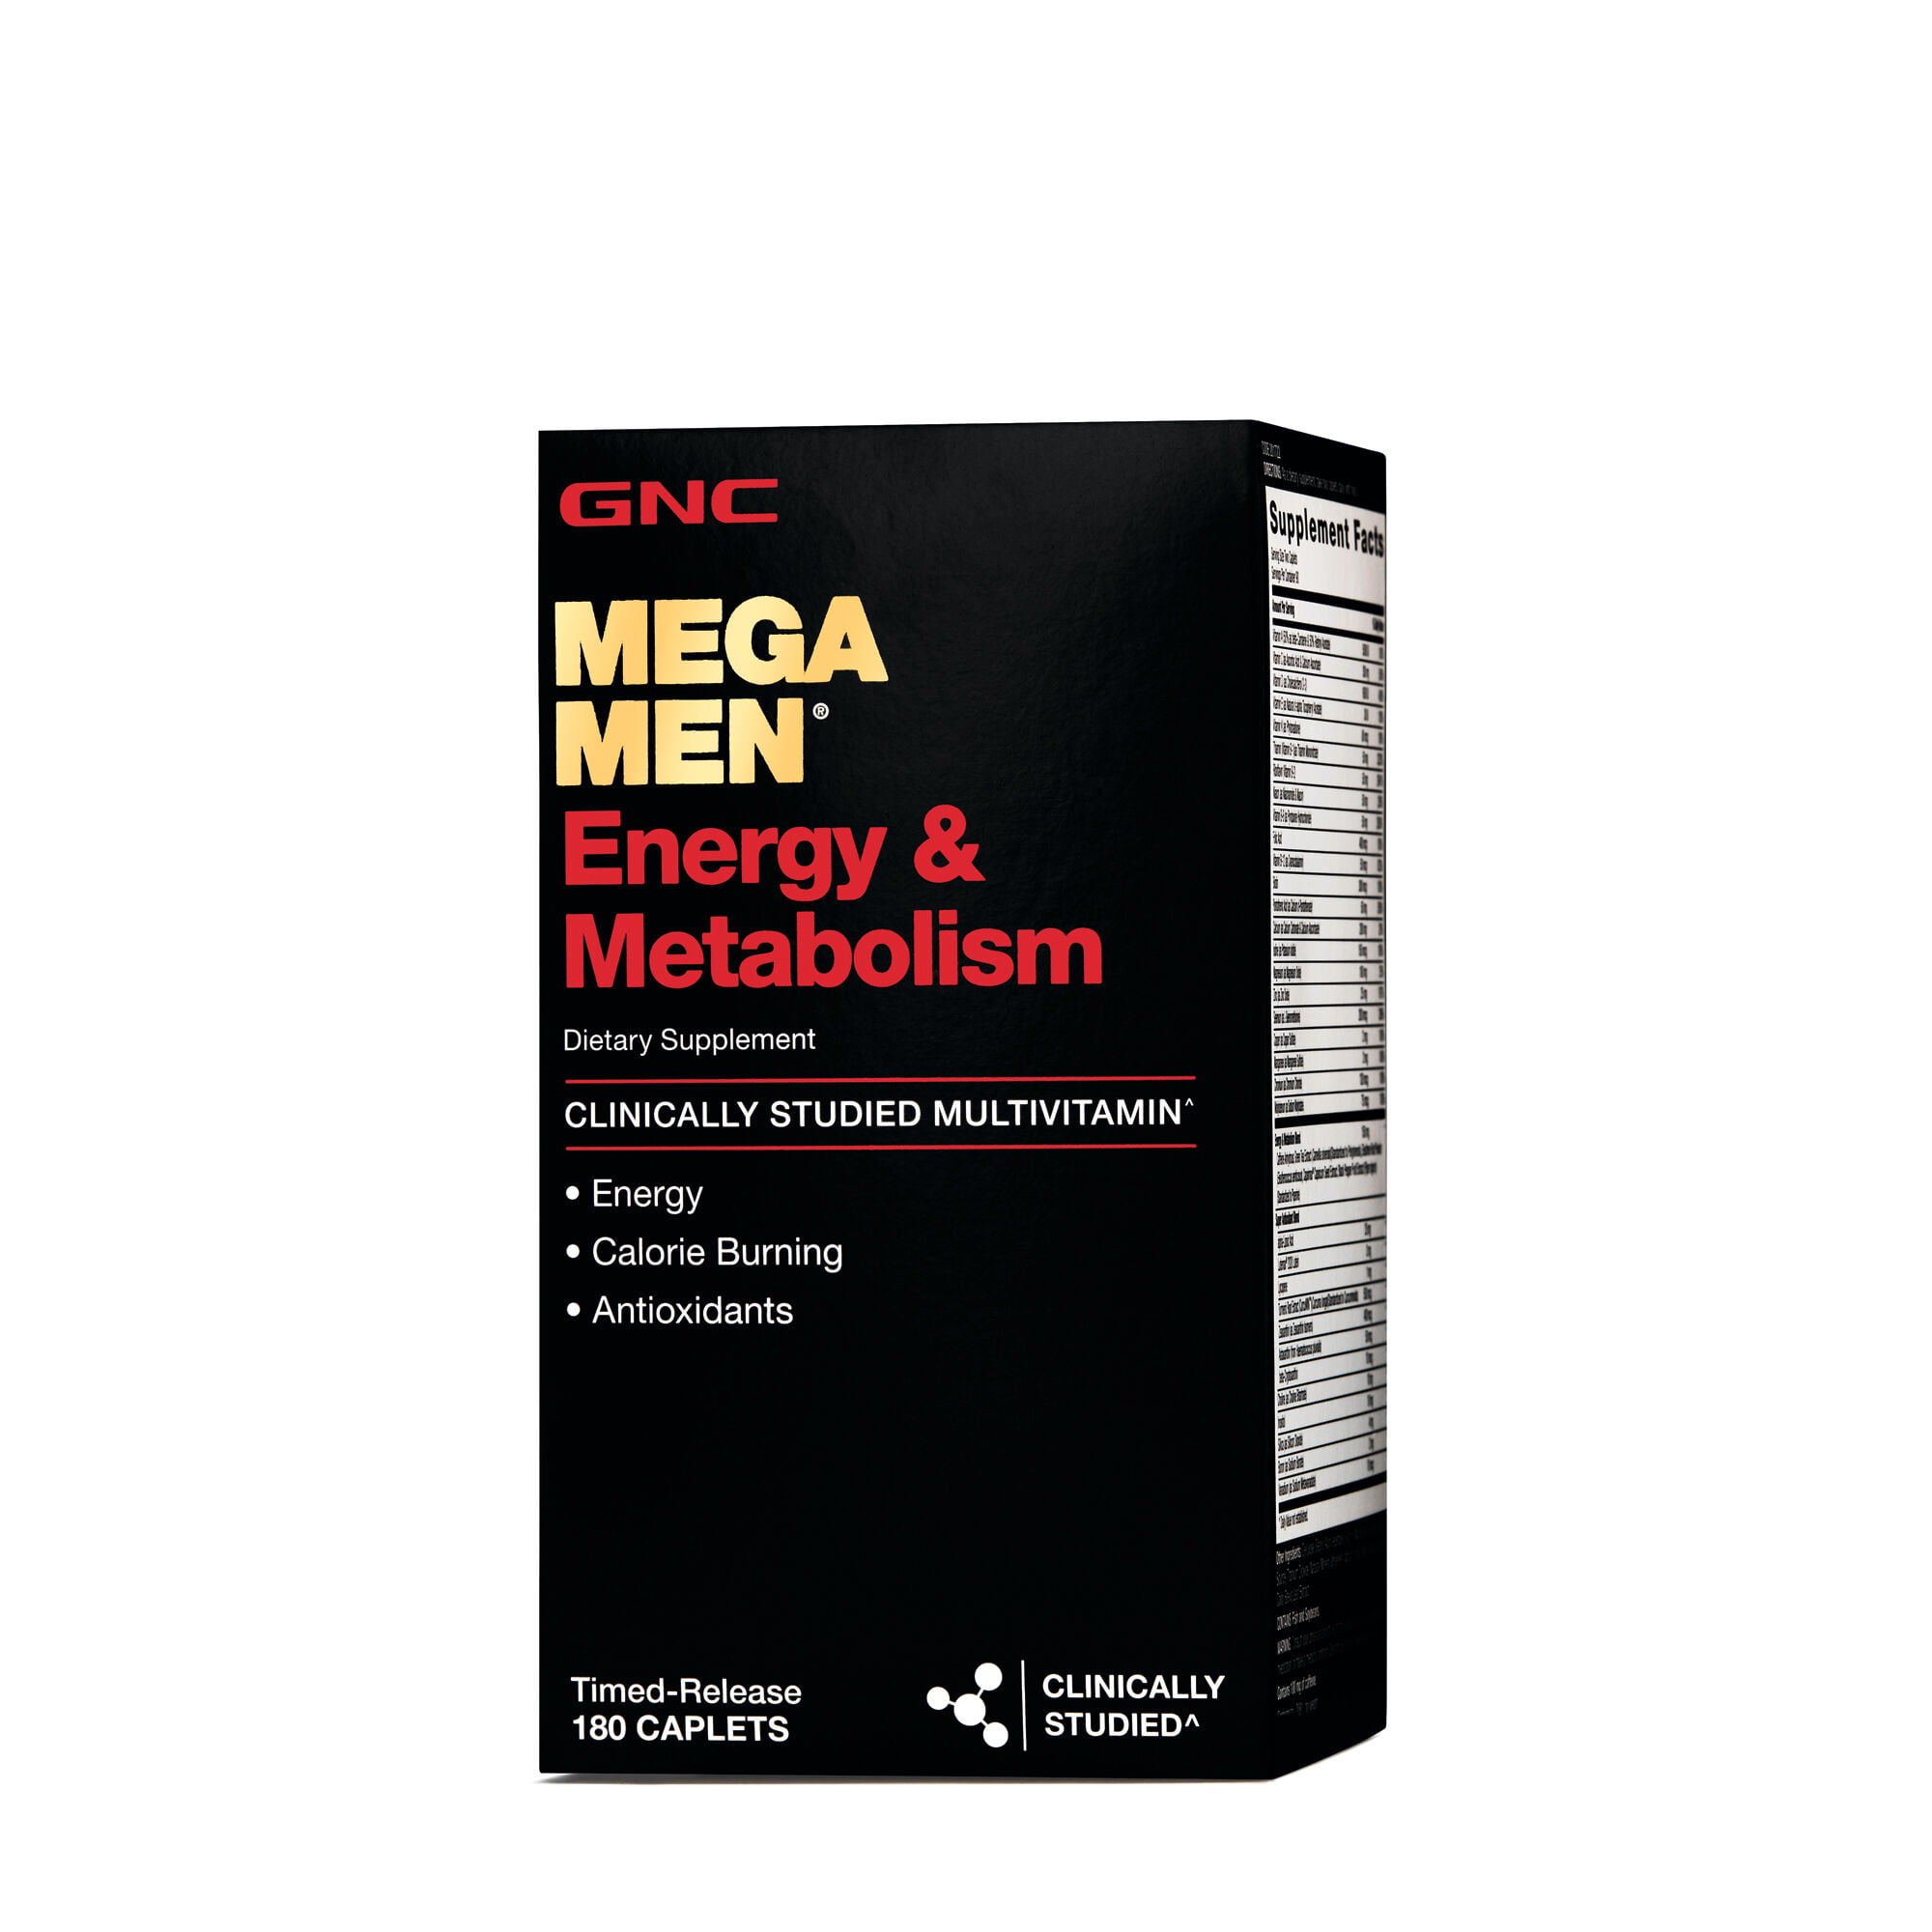 Витамины men sport. GNC Mega men 50 Plus. GNC Mega men 180. Mega men Sport GNC витамины. GNC, Mega men, клинически изученные мультивитамины для мужчин, 180 капсул.